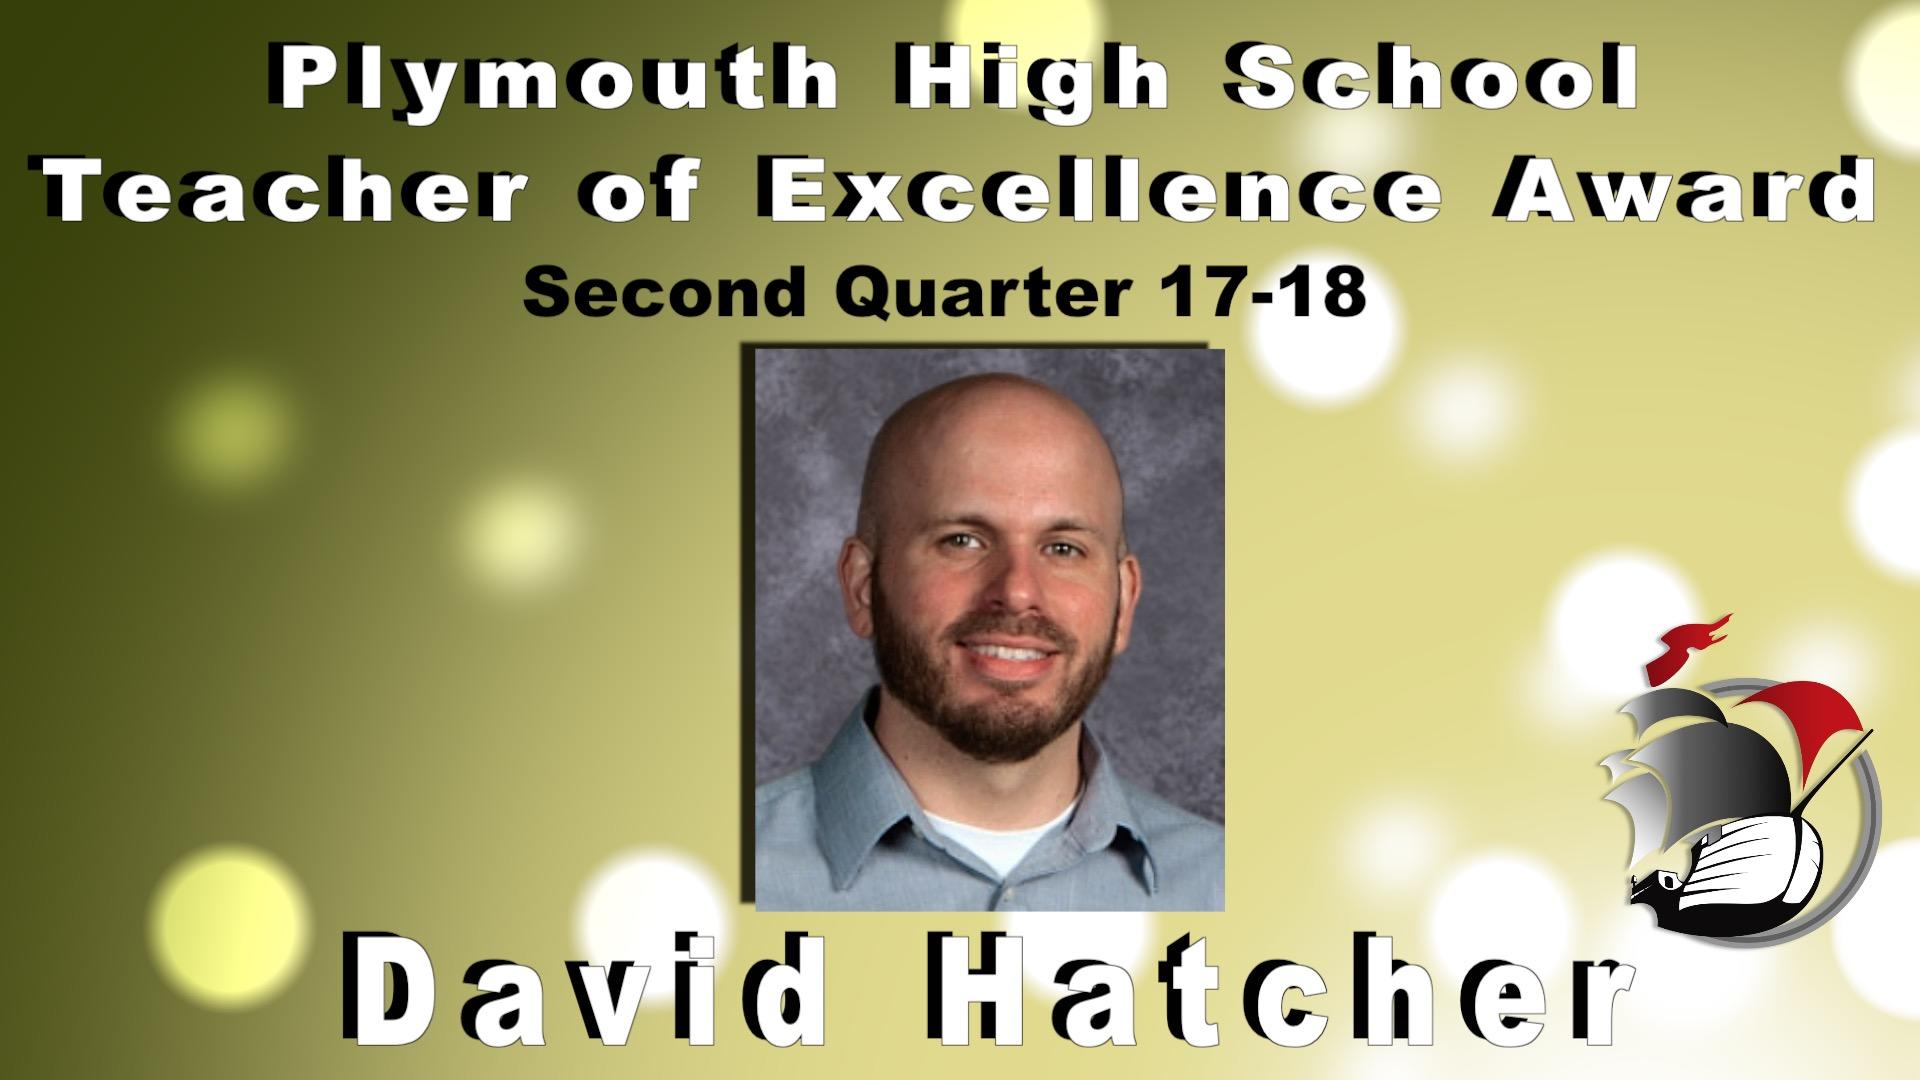 Plymouth High School Teacher of Excellence Award Second Quarter 17-18 David Hatcher